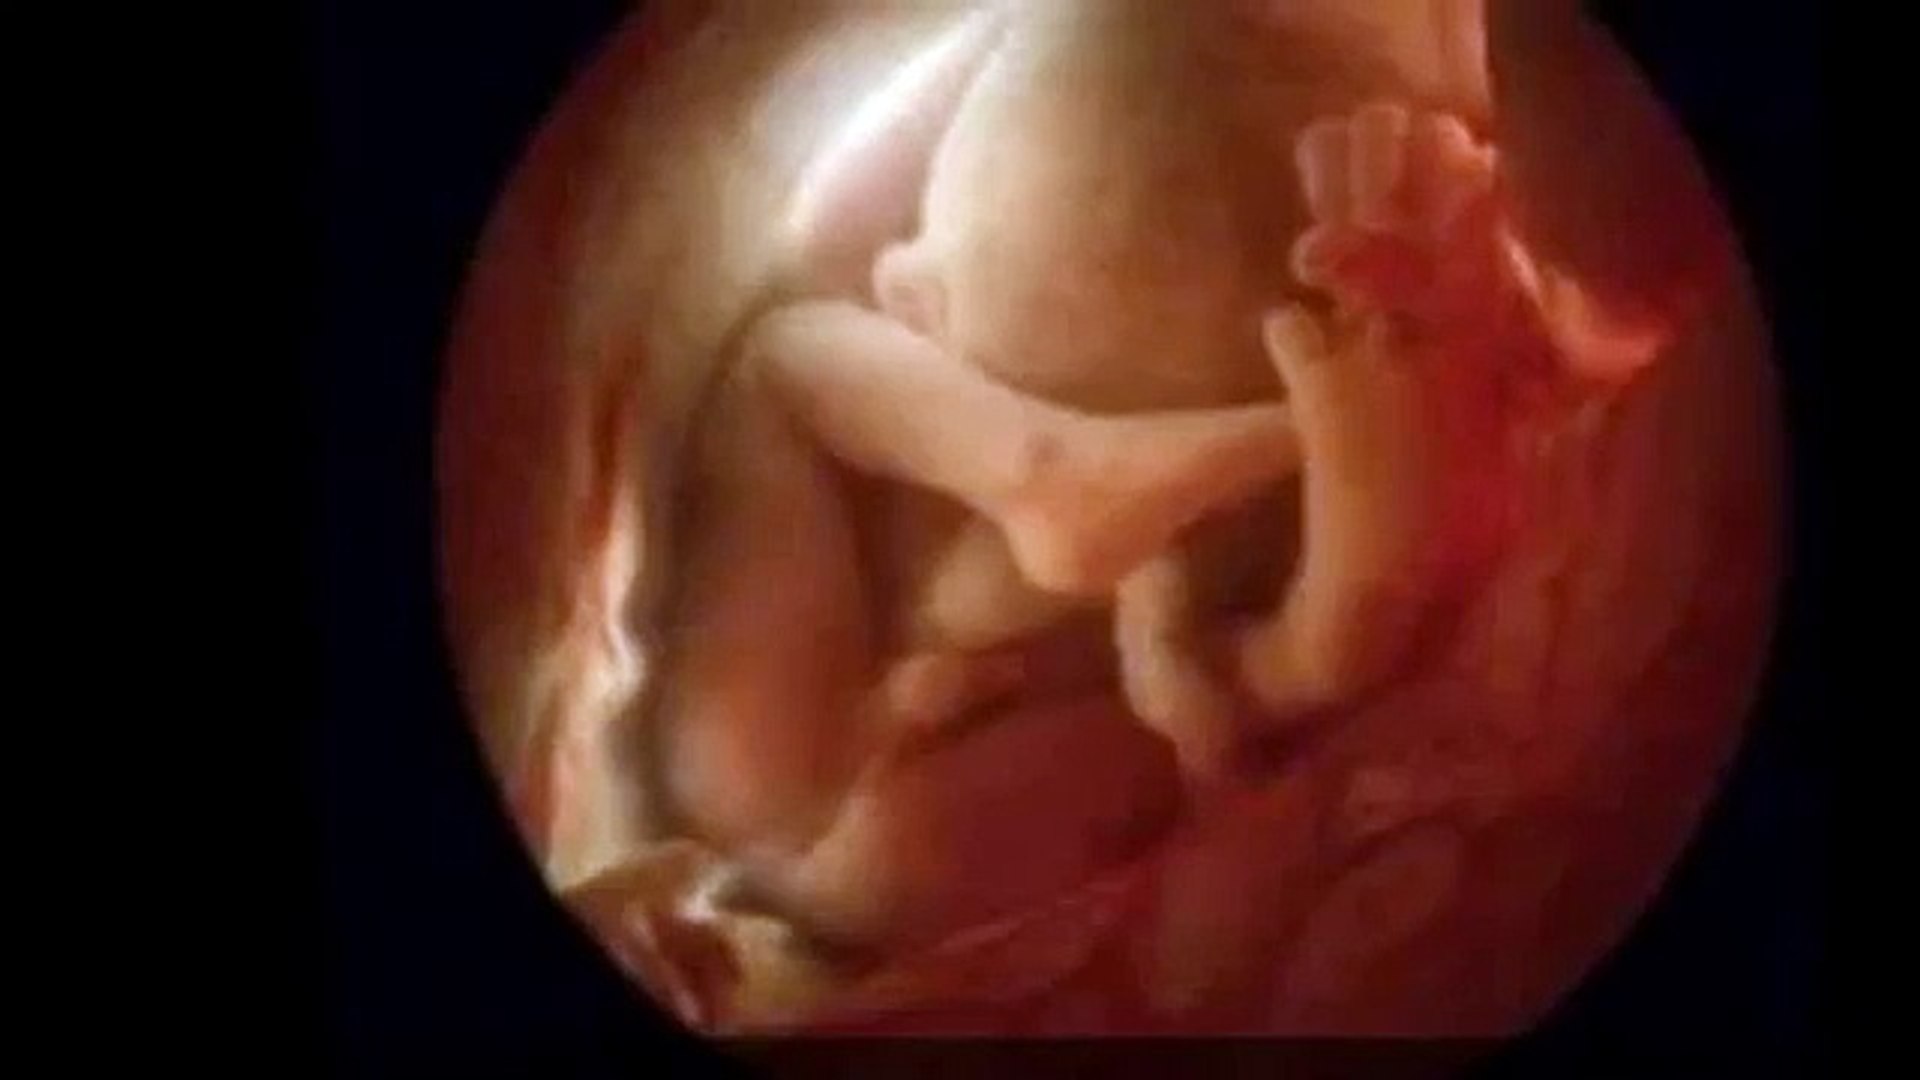 hafta hafta gebelik bebek ultrason goruntuleri by gebelik ve annelik dailymotion